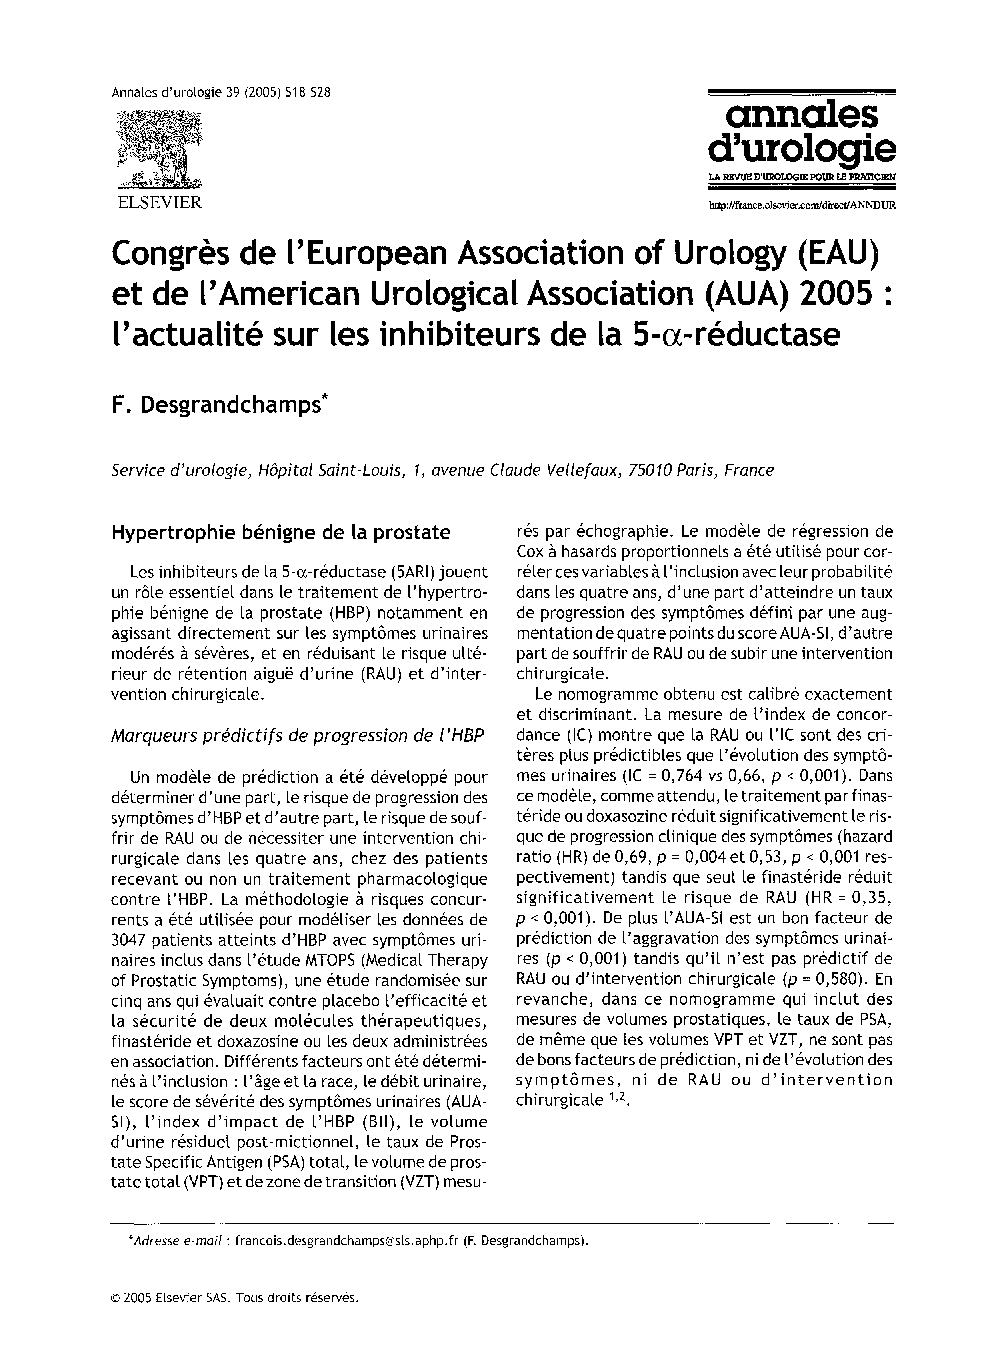 CongrÃ¨s de l'European Association of Urology (EAU) et de l'American Urological Association (AUA) 2005 : l'actualité sur les inhibiteurs de la 5-Î±-réductase